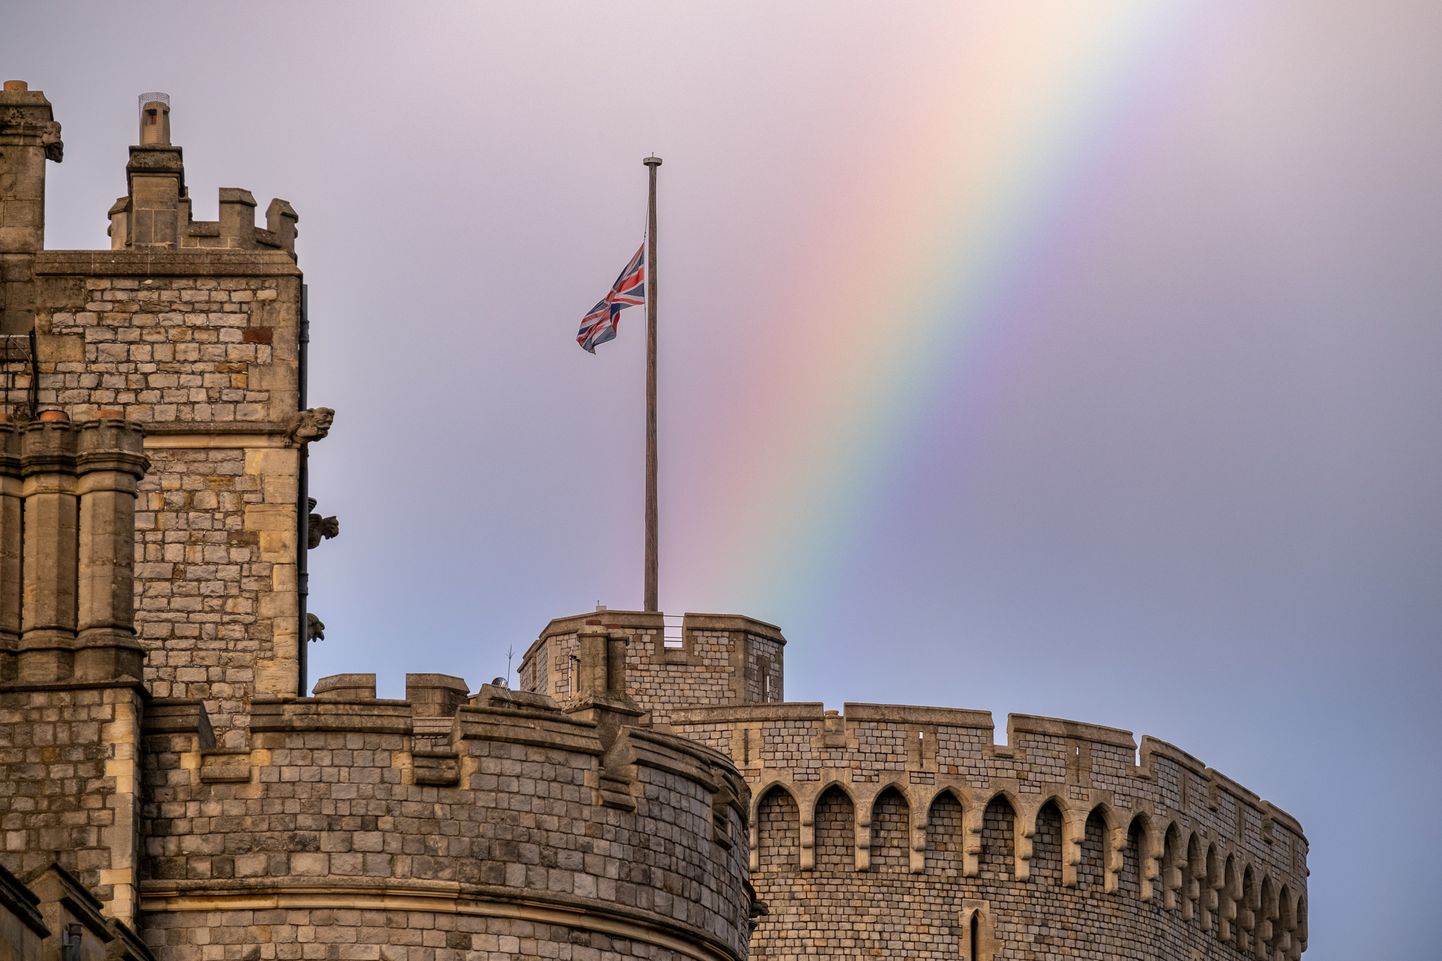 Vaatepilt Windsori lossi juures pärast kurva uudise teatavaks tulekut. Lipp on pooles mastis, taamal paistab kaunis vikerkaar.